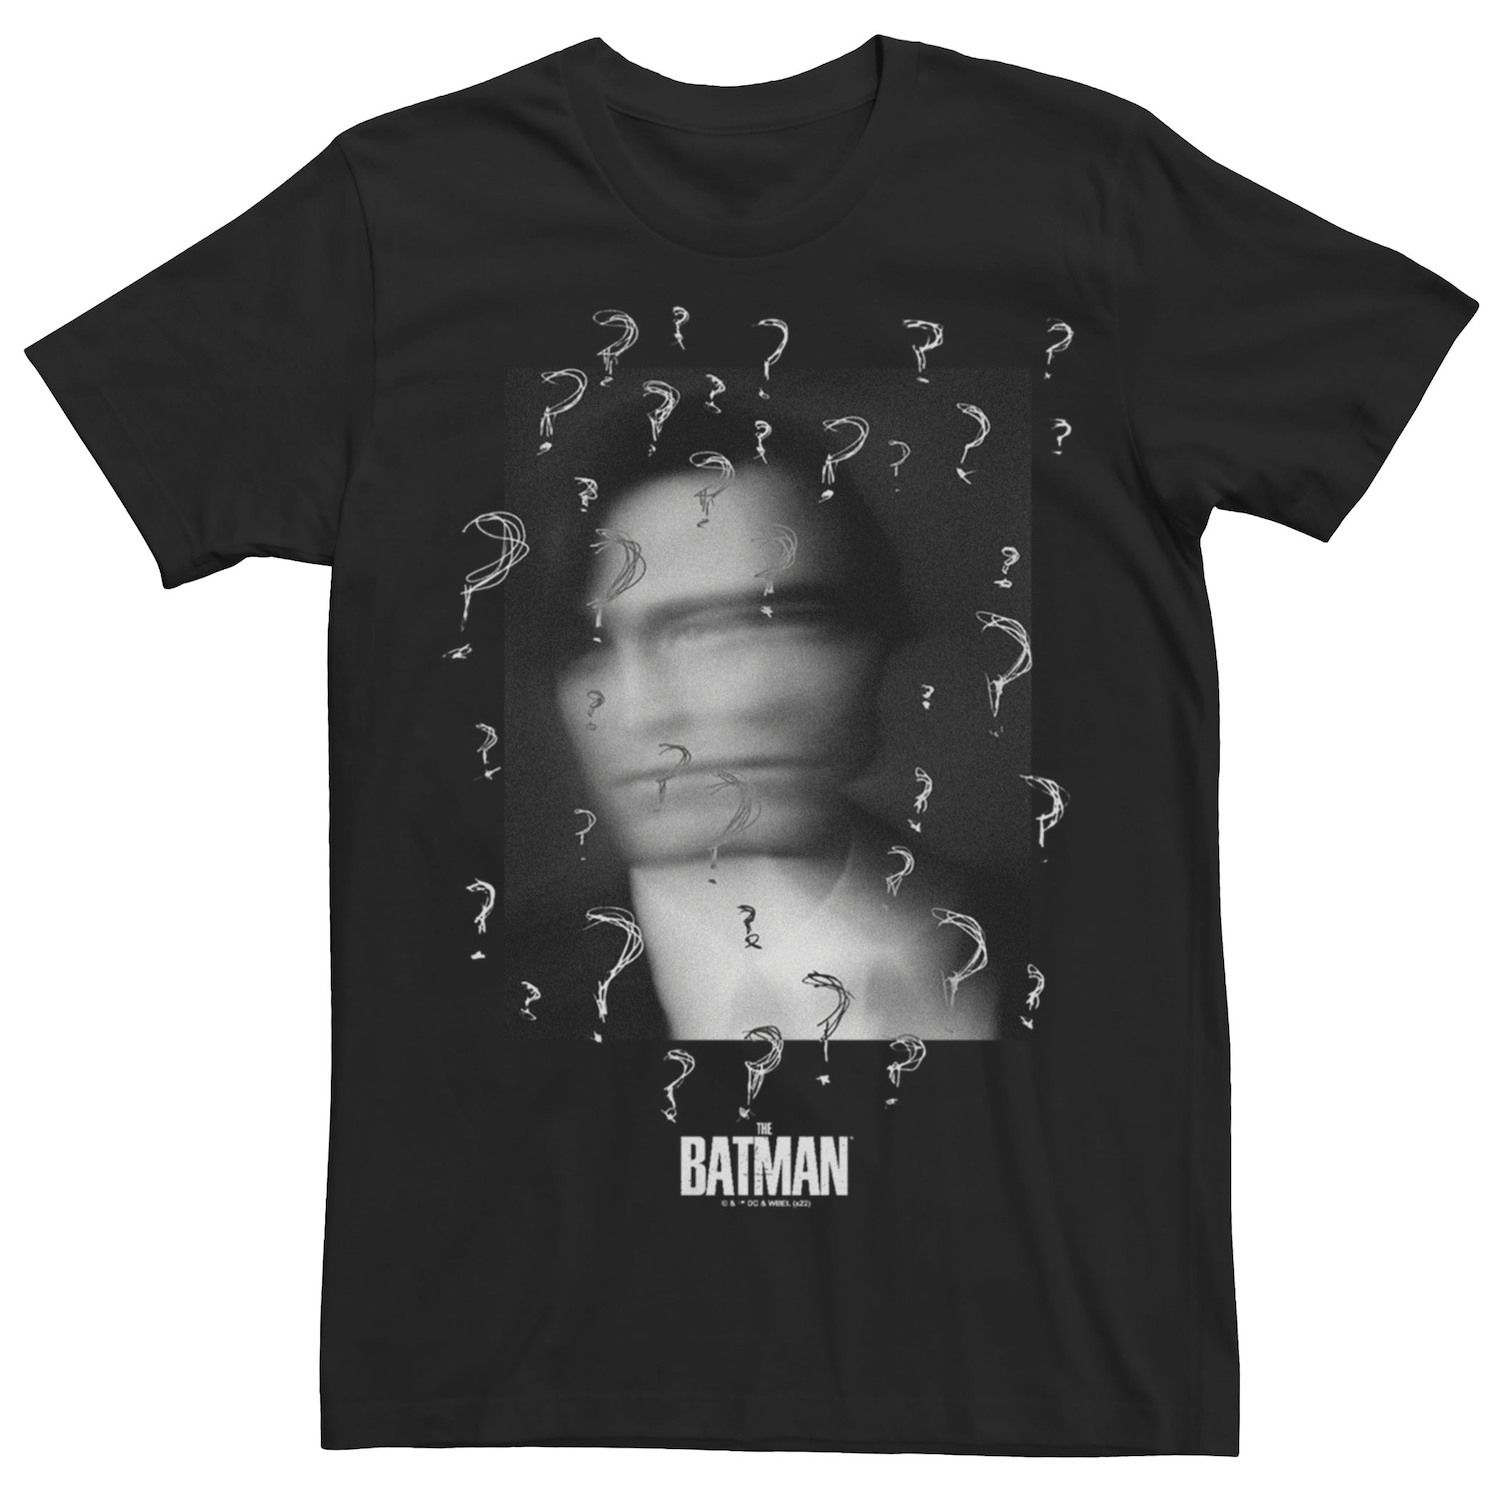 Мужская футболка DC Batman с вопросительными знаками Licensed Character